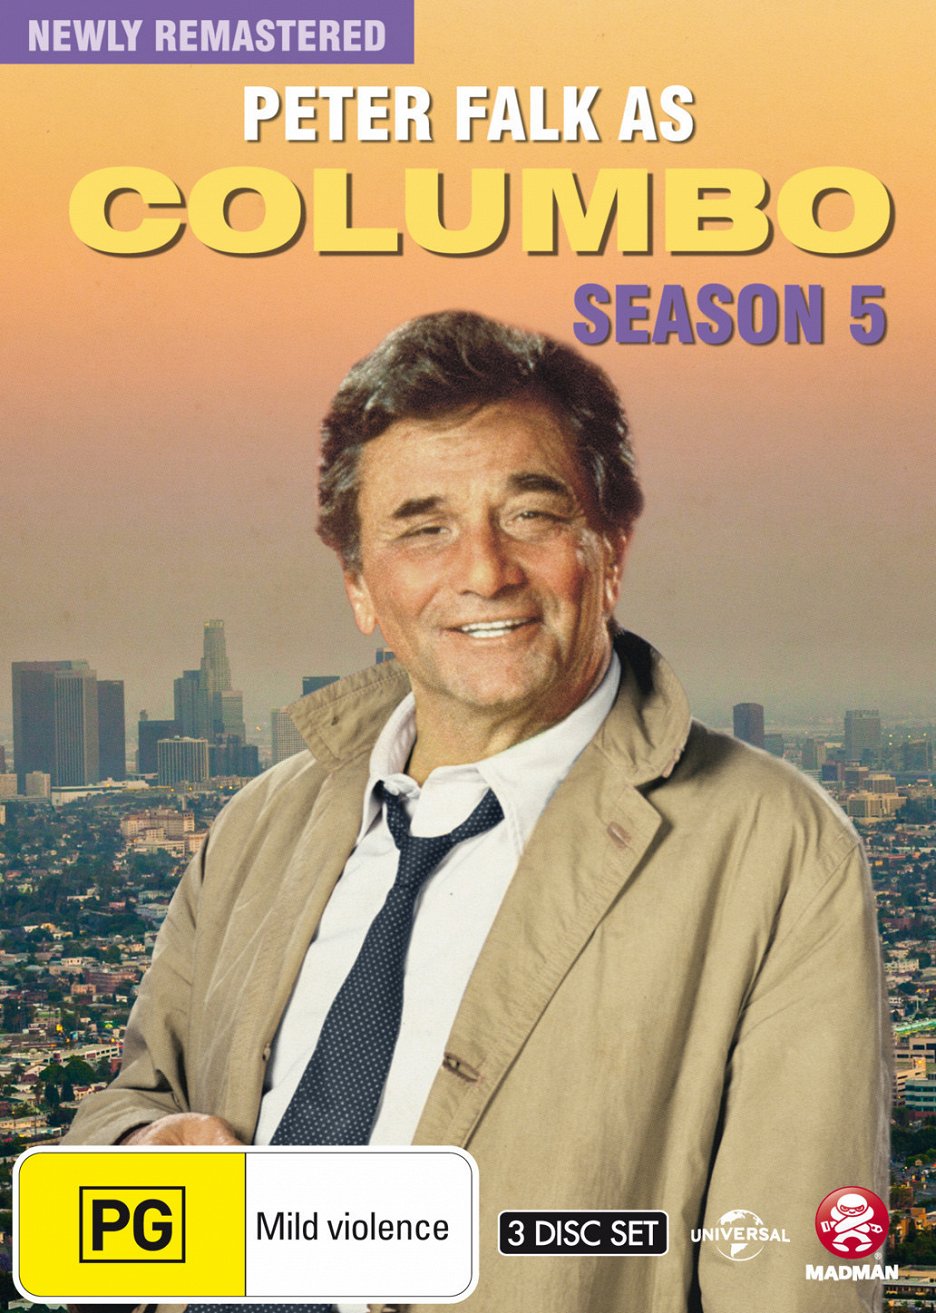 Inspektor Colombo  Série 5 (S05) (1975)  Zajímavosti  Zajímavosti